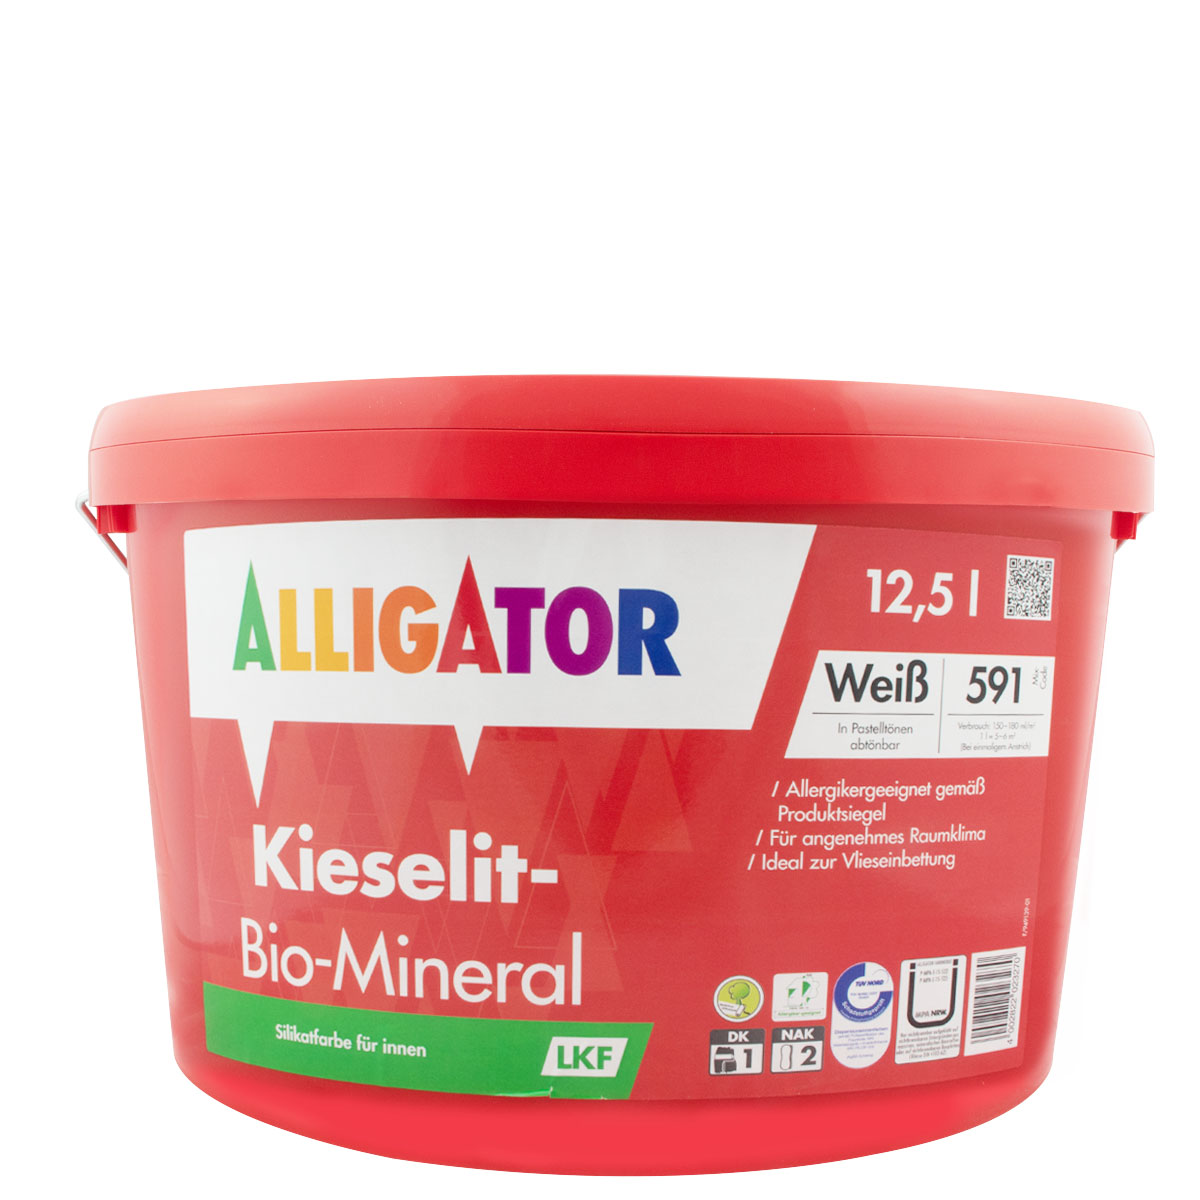 Alligator_kieselit_bio-mineral_12,5l_gross